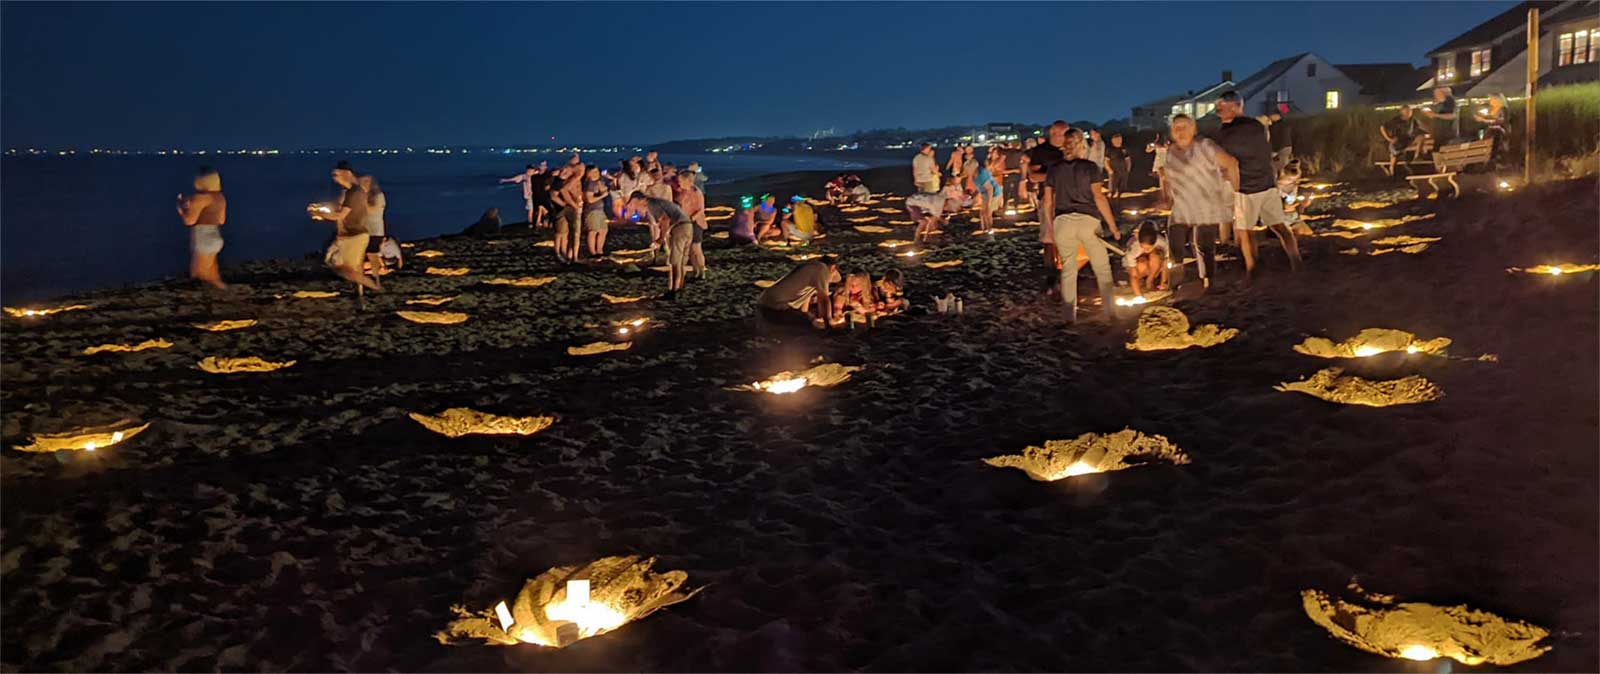 Ocean Park Association — Illumination Night